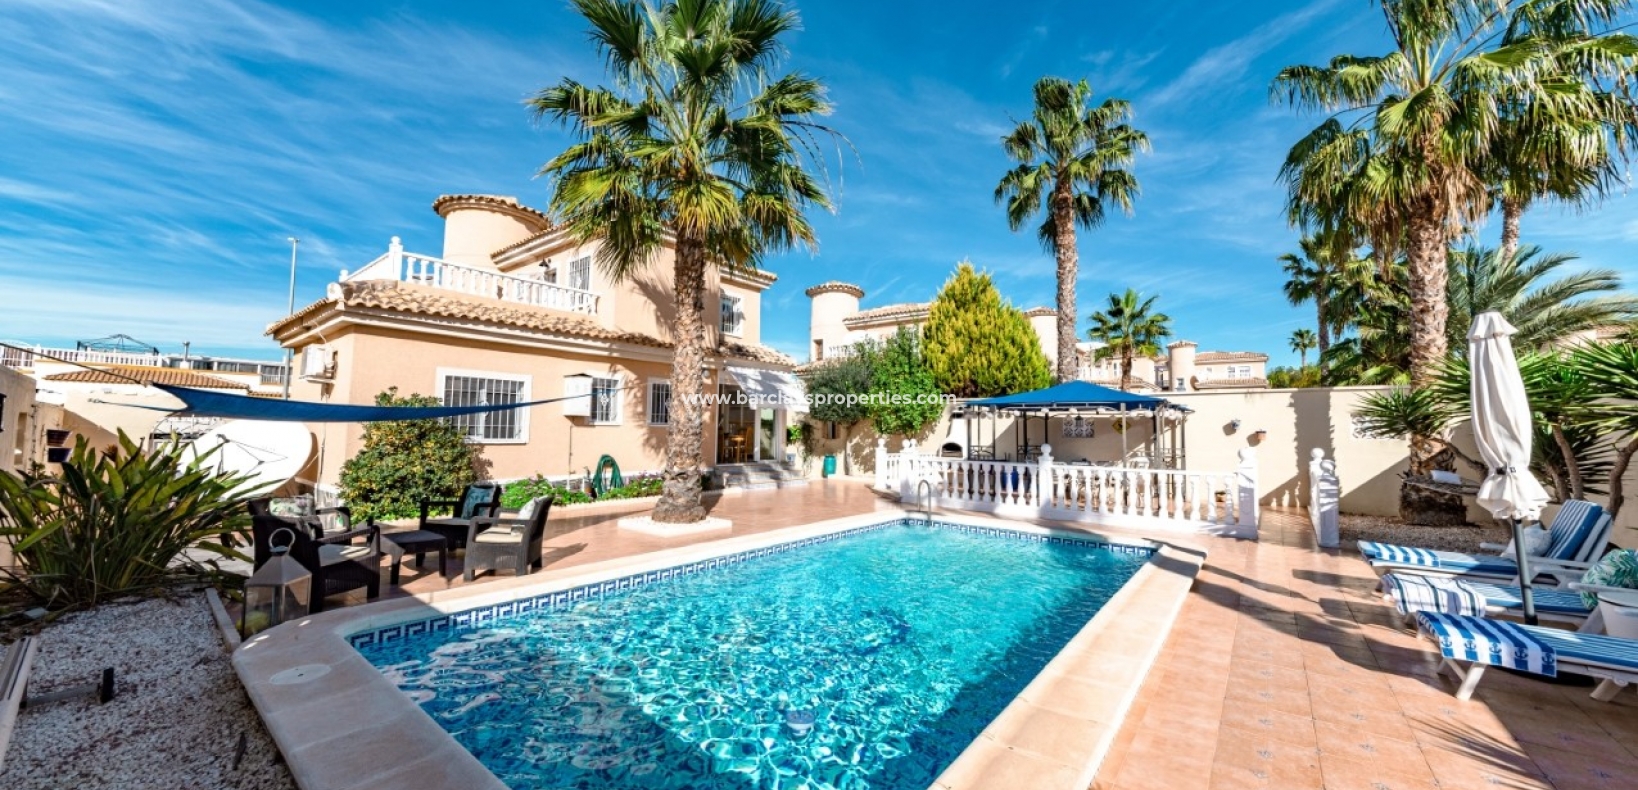 Tuin - Prestige villa te koop in urbanisatie La Marina Spanje